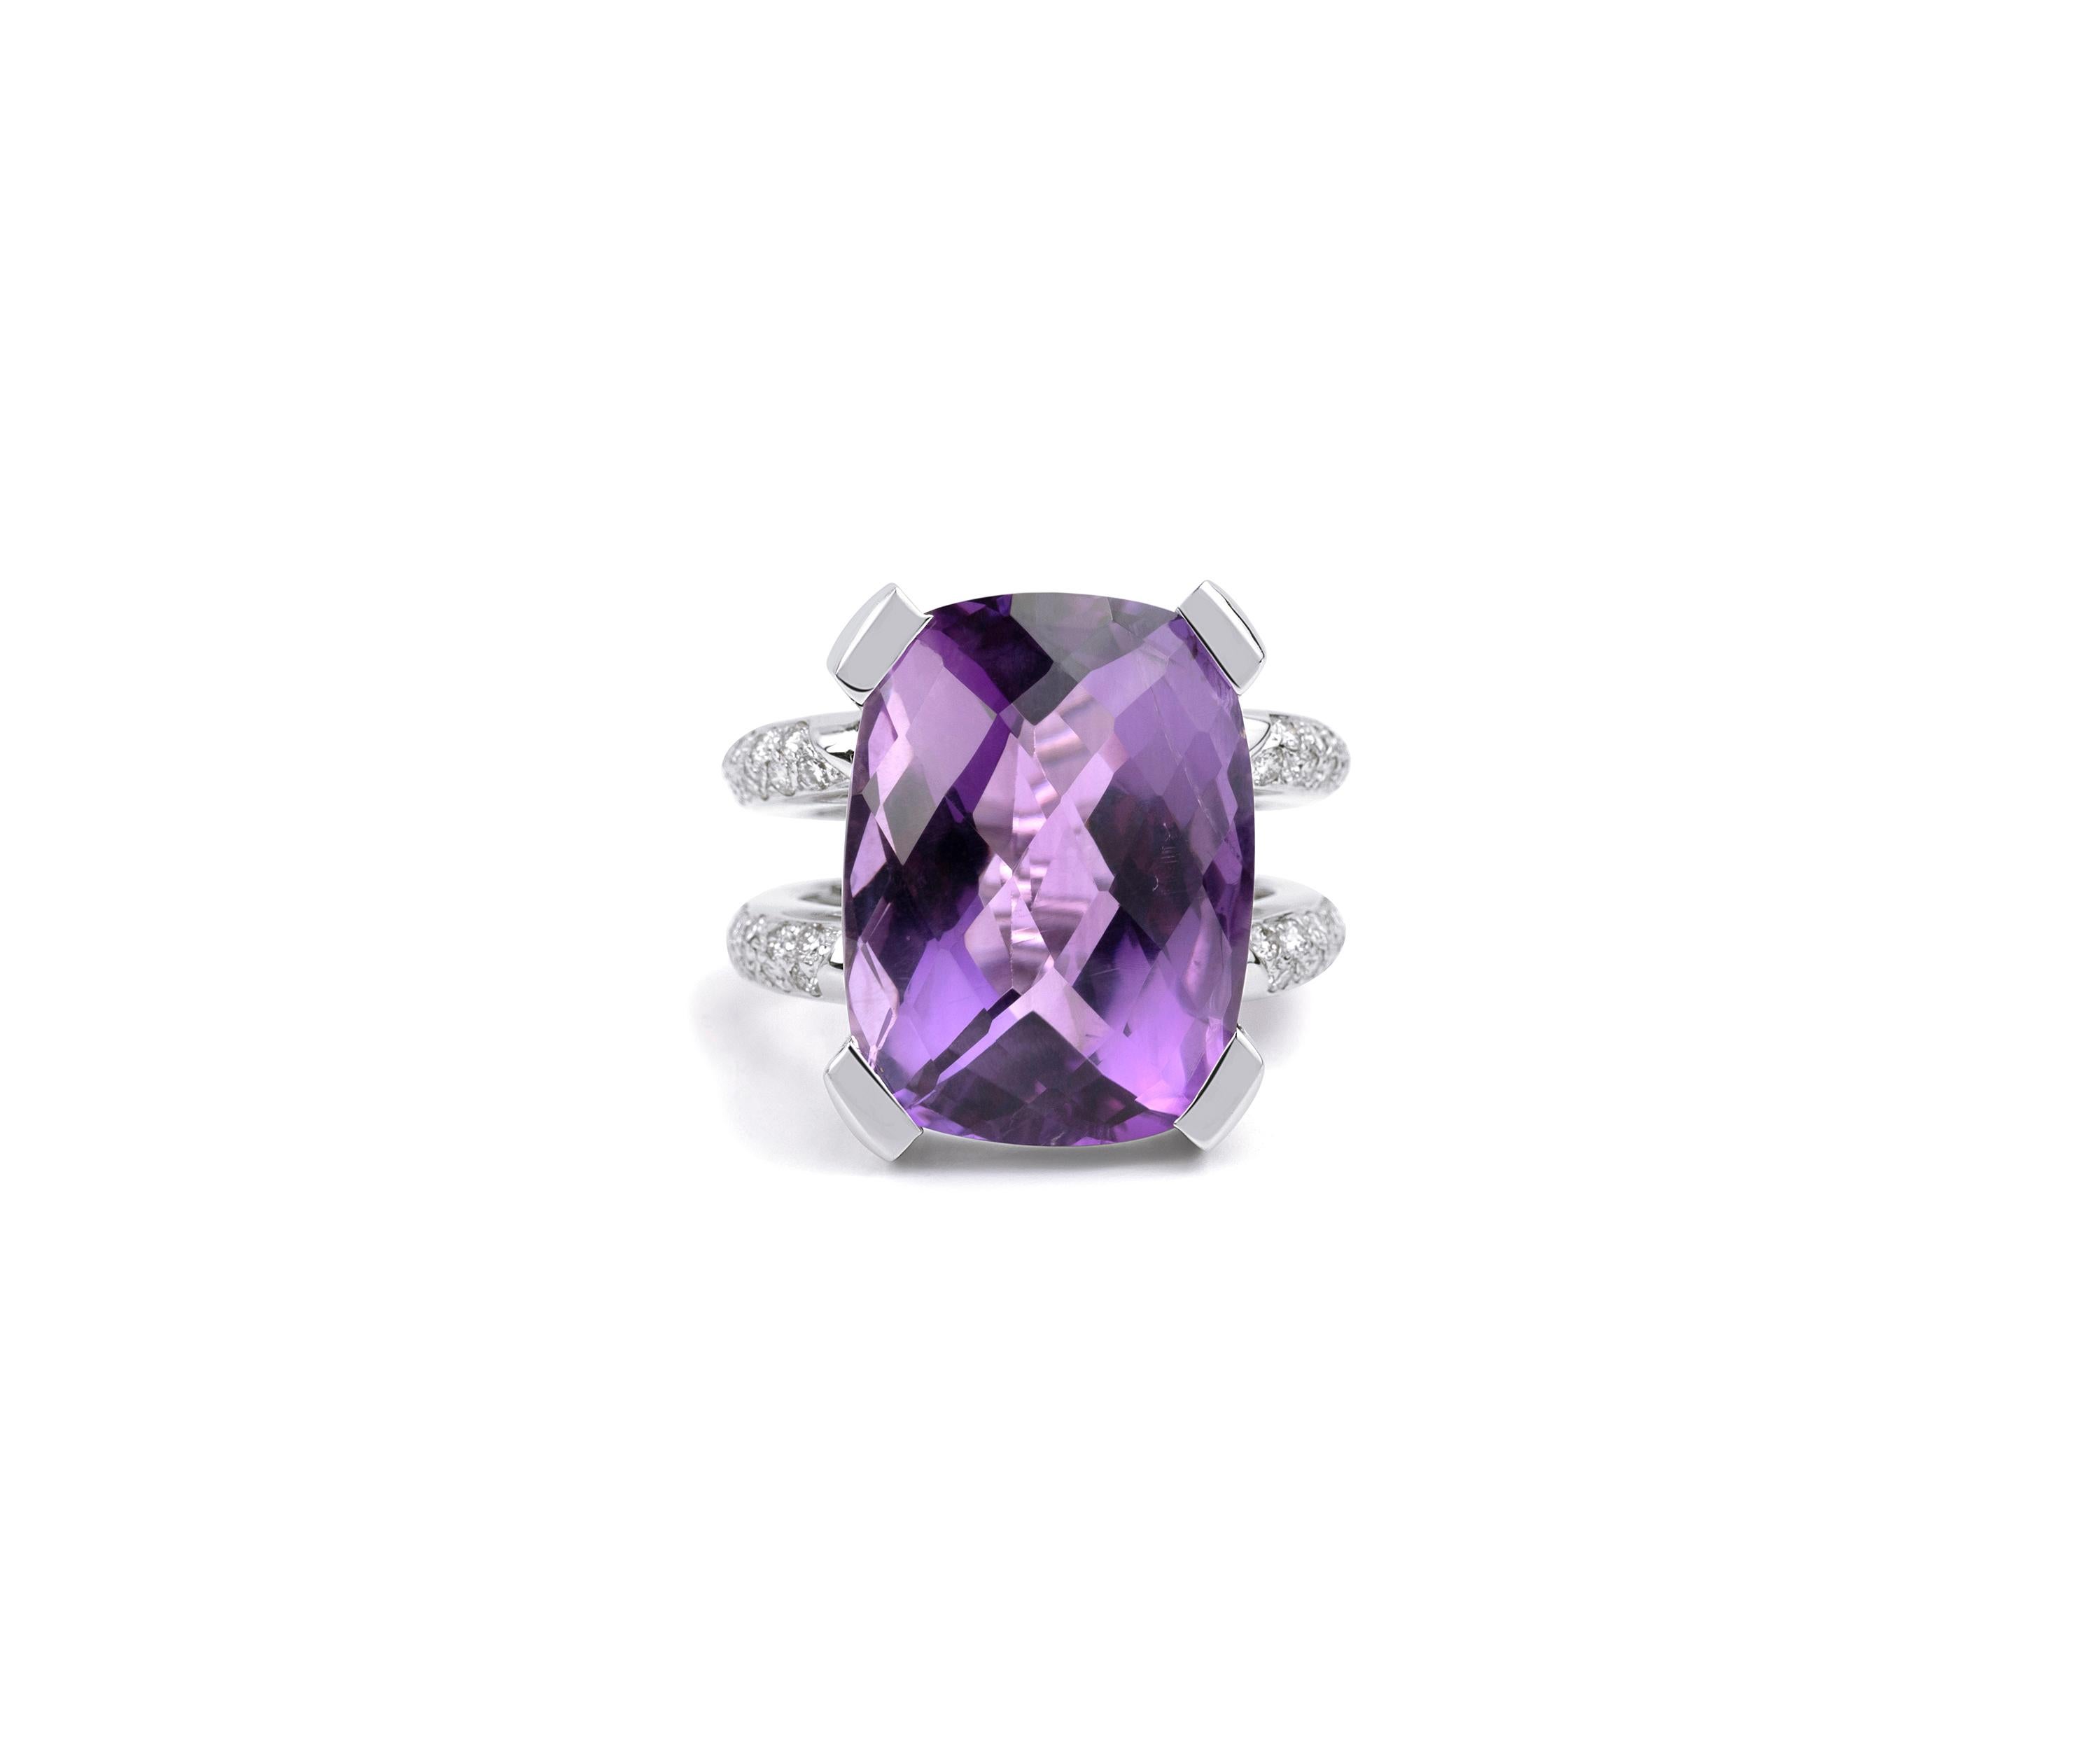 18 carat Cushion Cut Purple Amethyst 1 CT Diamond Cocktail Statement Ring 18k

Disponible en or blanc 18k.

Le même design peut être réalisé avec d'autres pierres précieuses sur demande.

Détails du produit :

- Or massif 11.3 grammes

- Diamant